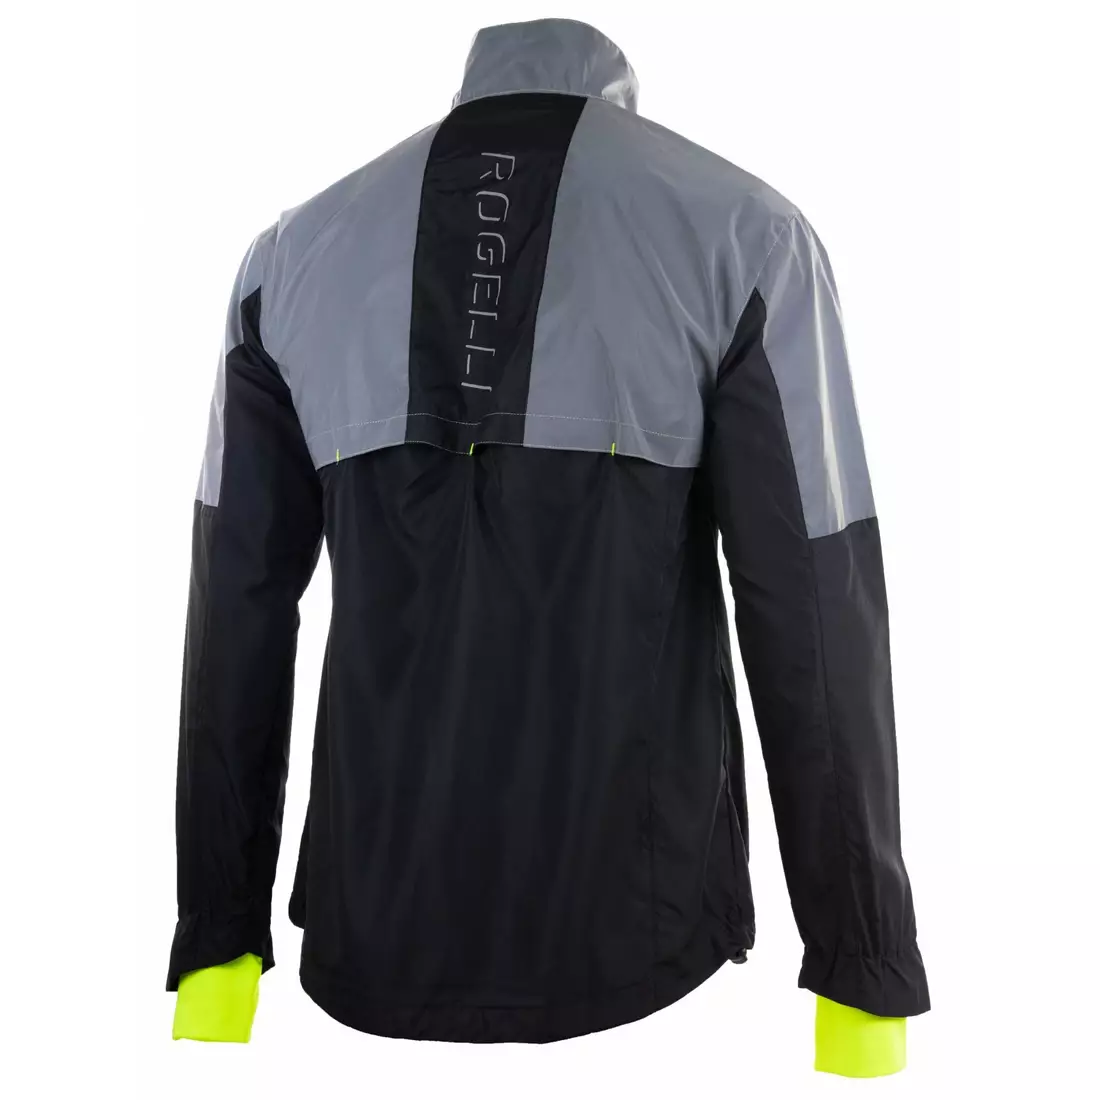 Rogelli REFLEX men's running jacket, reflective 830.839